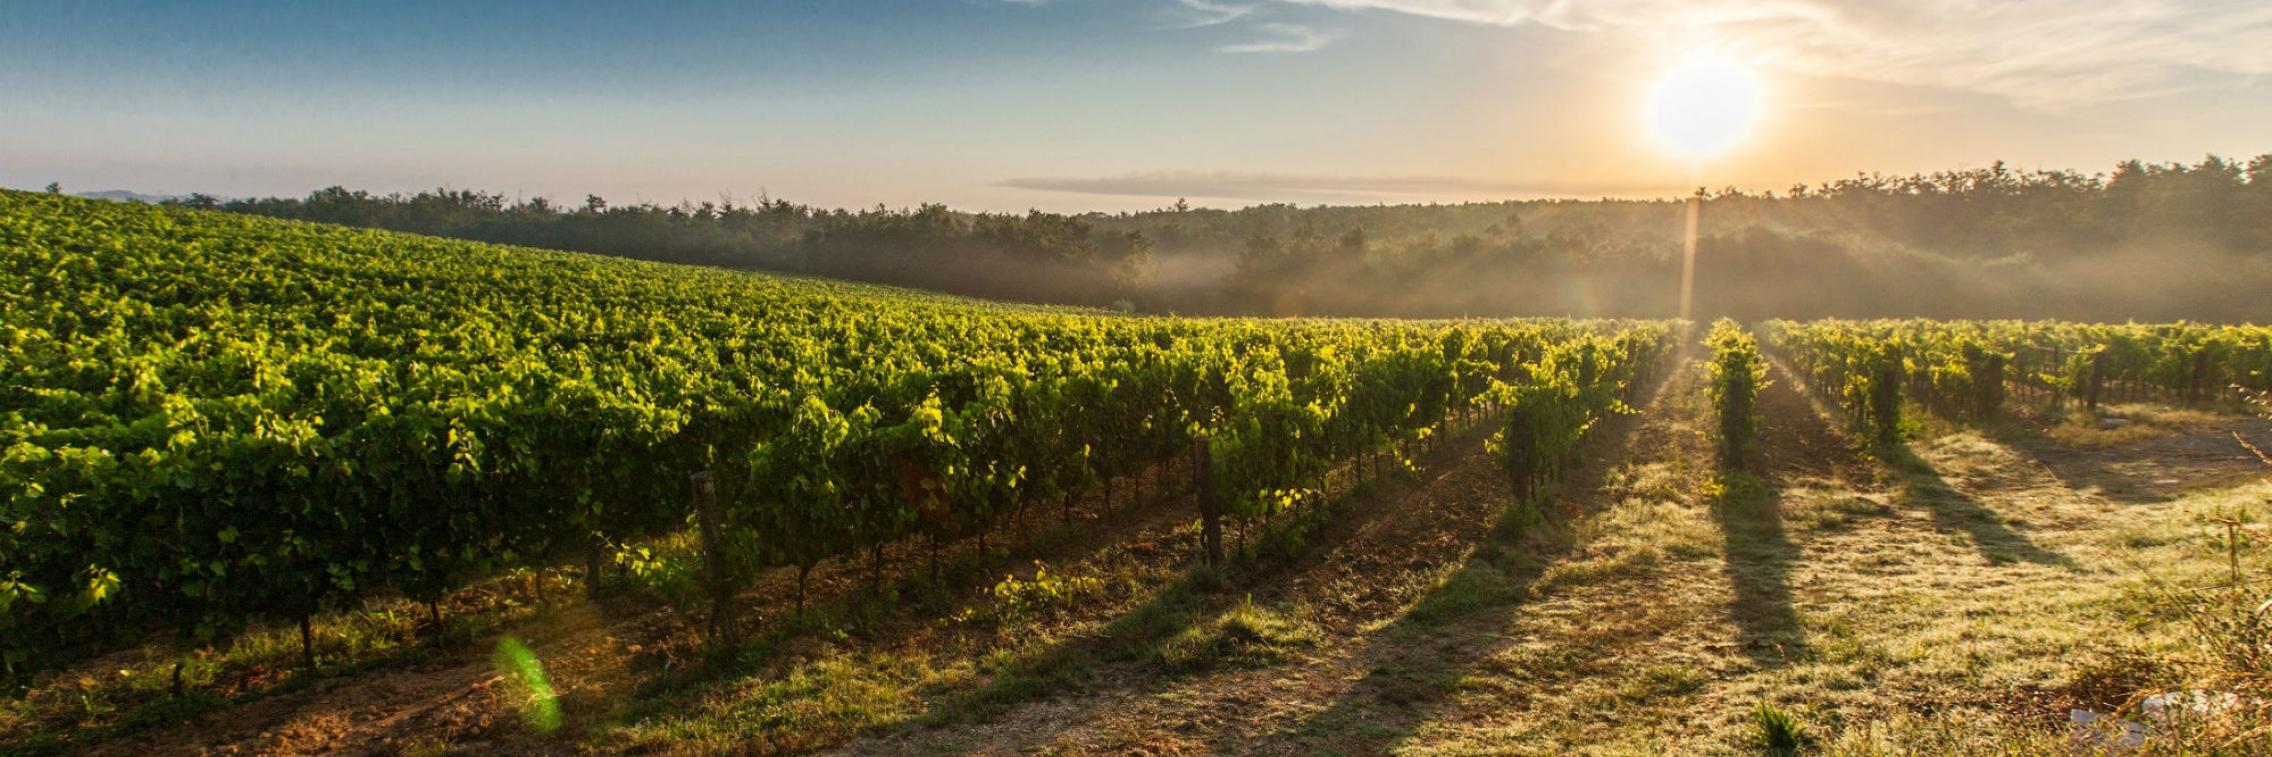 Wine crops in daylight